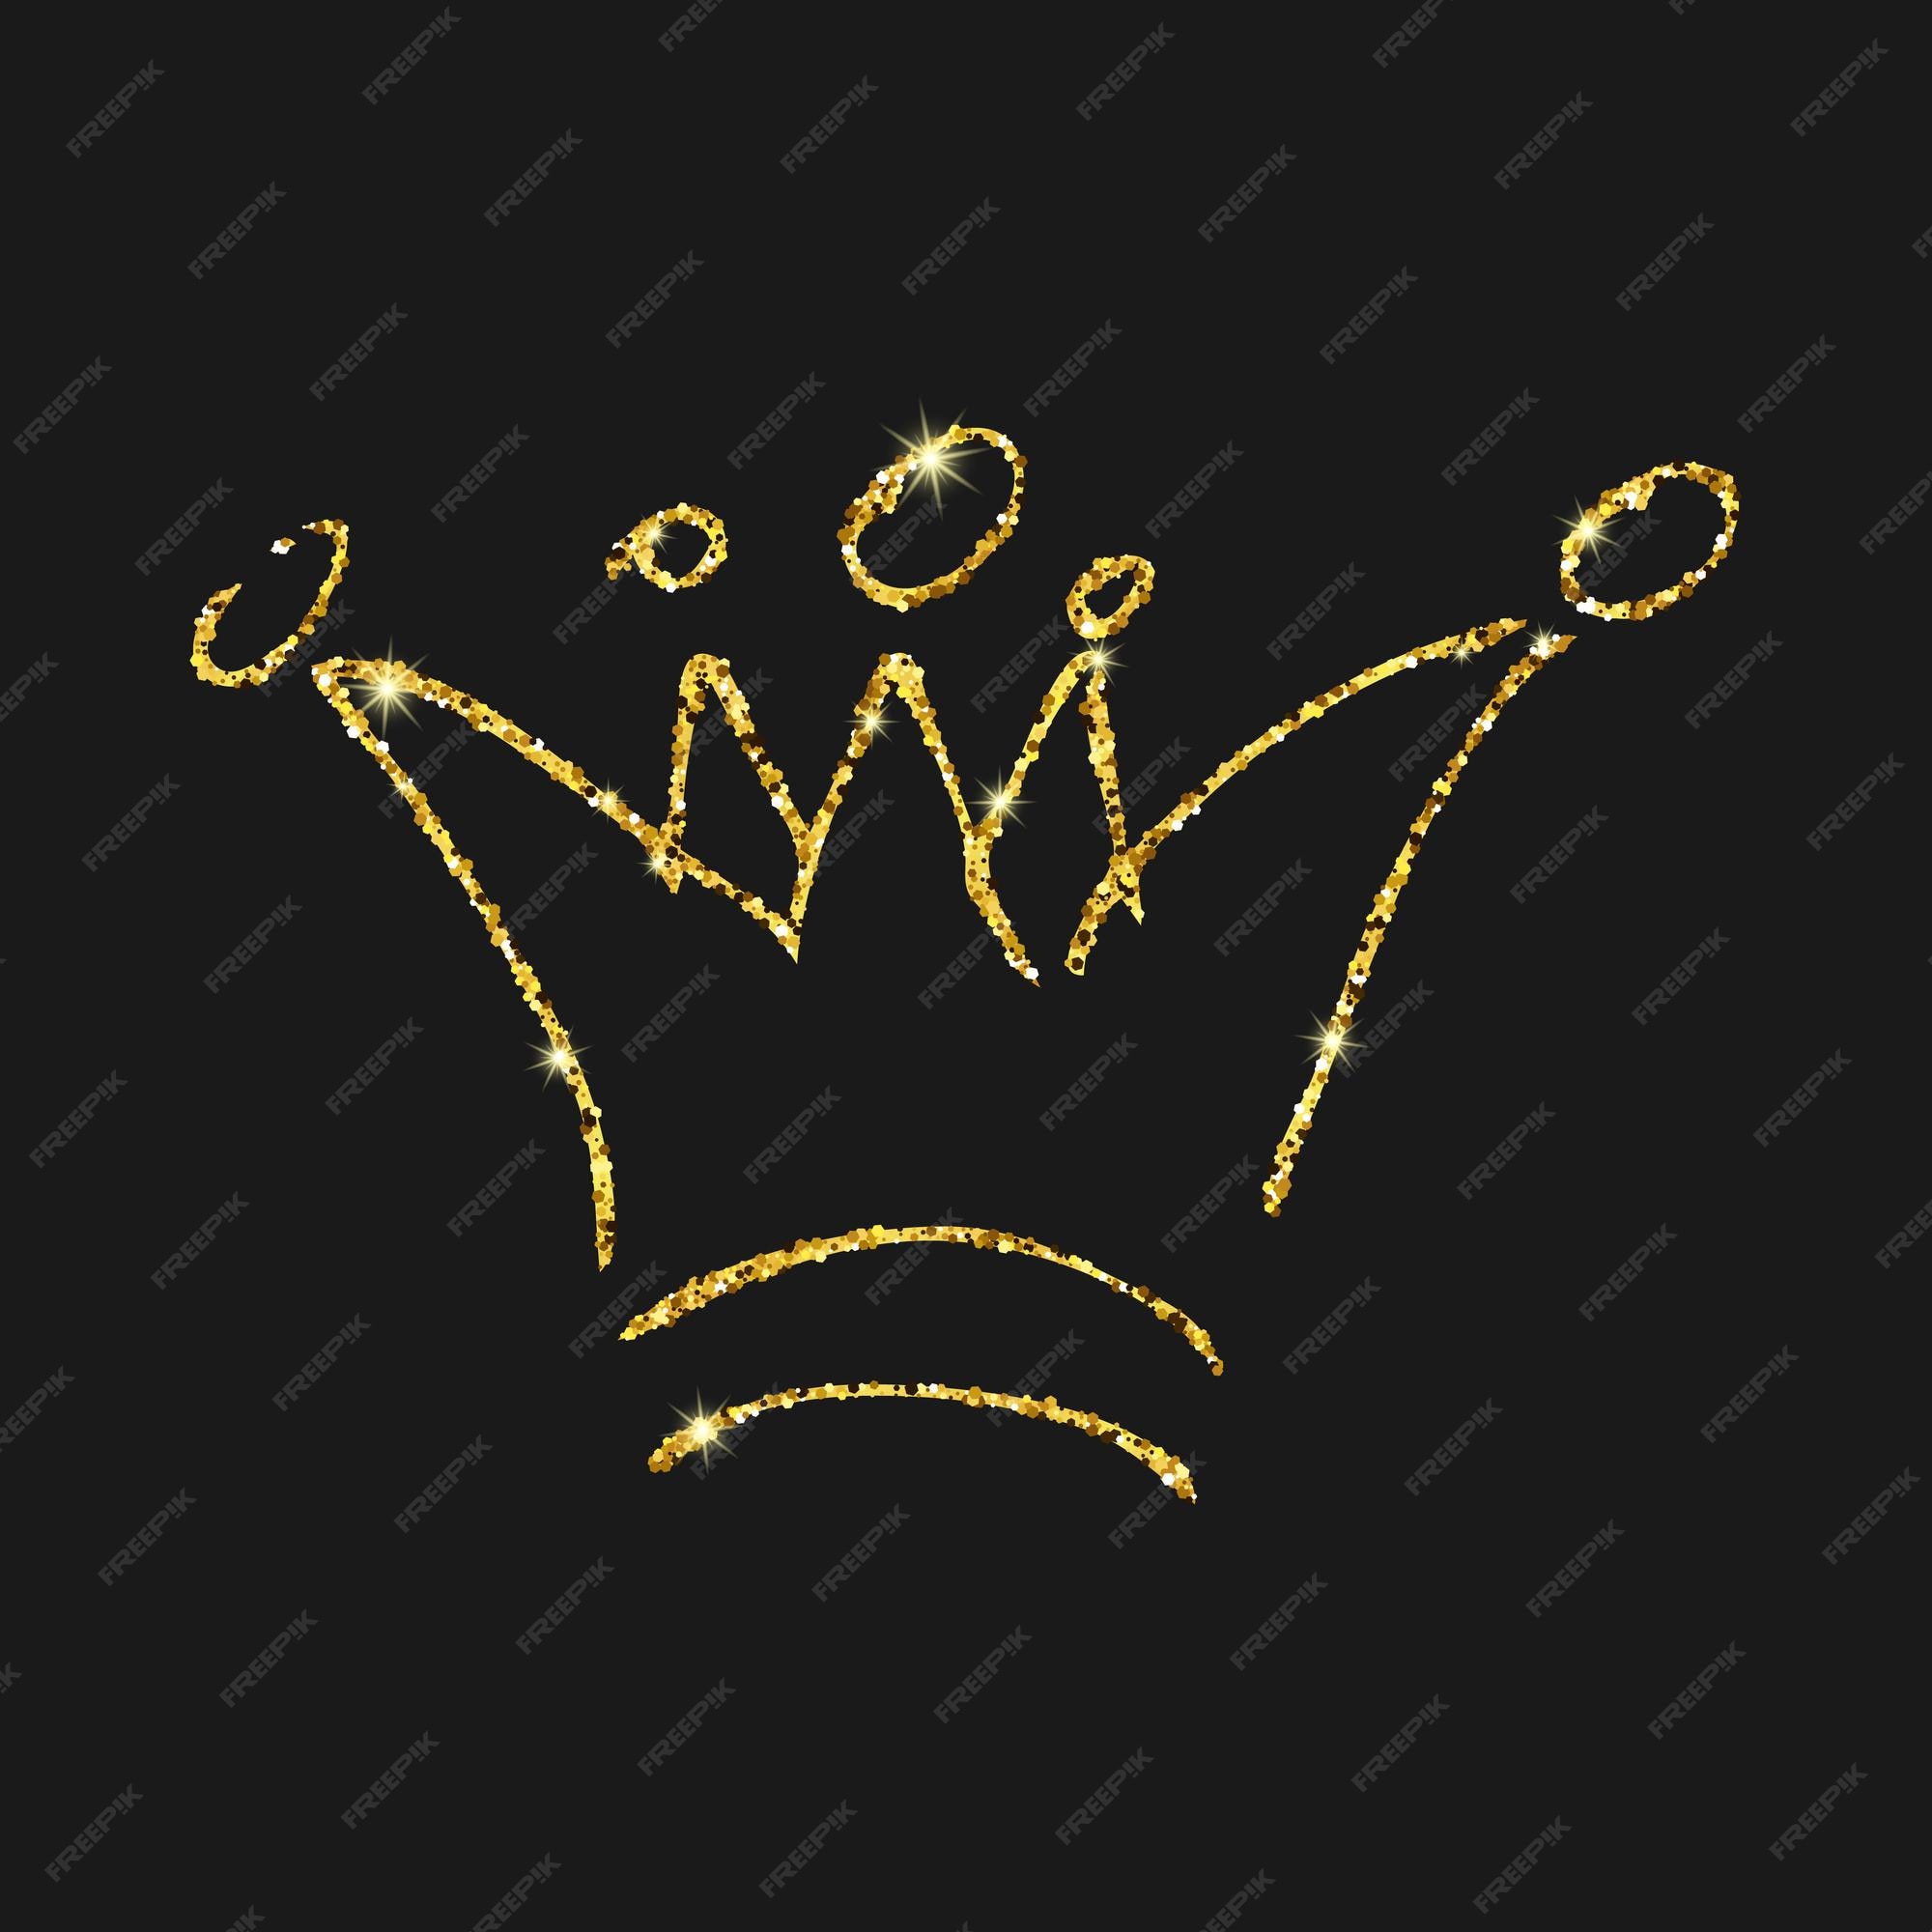 ゴールドのキラキラ手描きの王冠シンプルな落書きスケッチ女王または王冠王室の戴冠式と暗い背景に分離された君主のシンボルベクトル図 プレミアムベクター